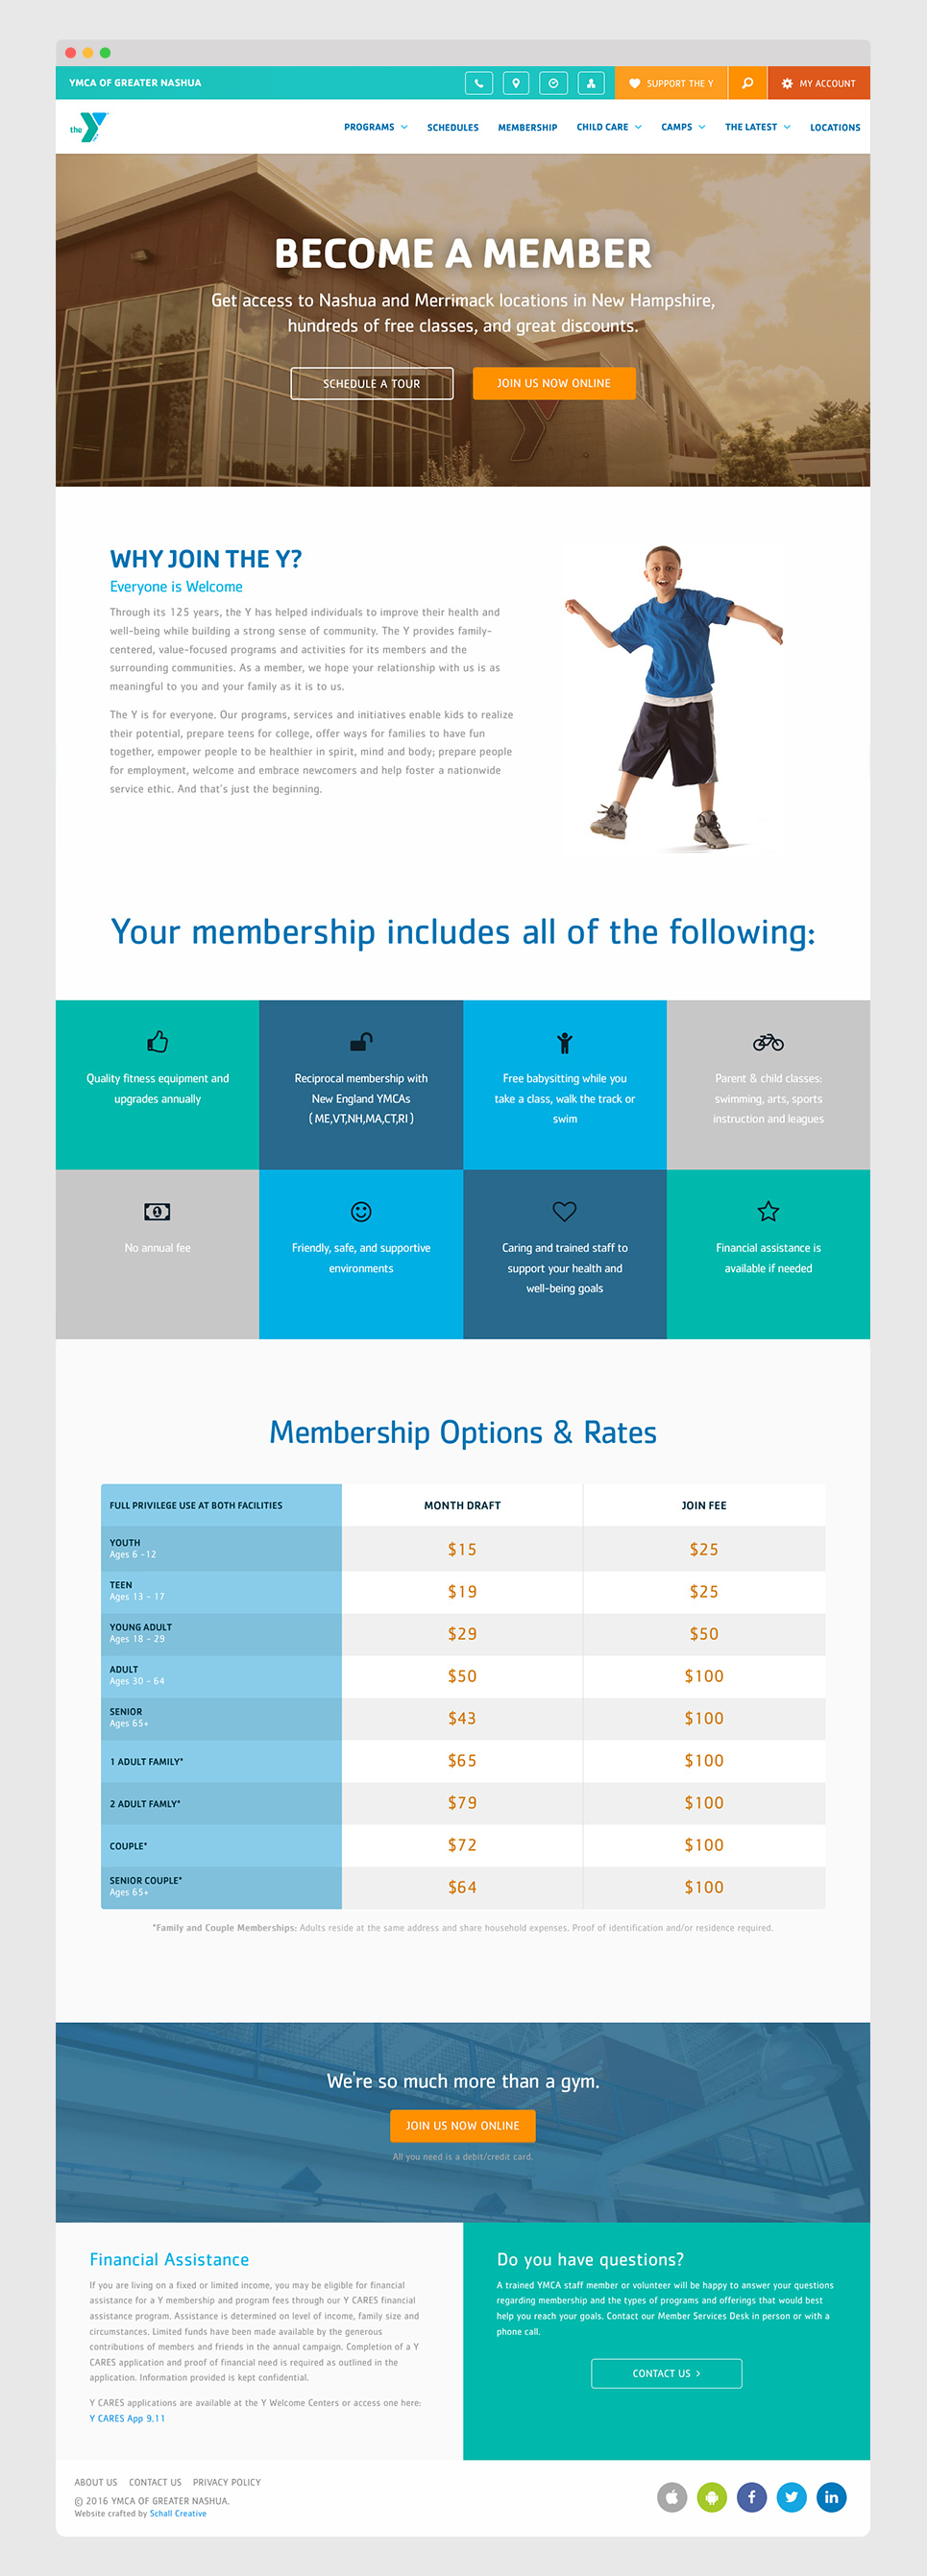 Goals of Increasing Membership